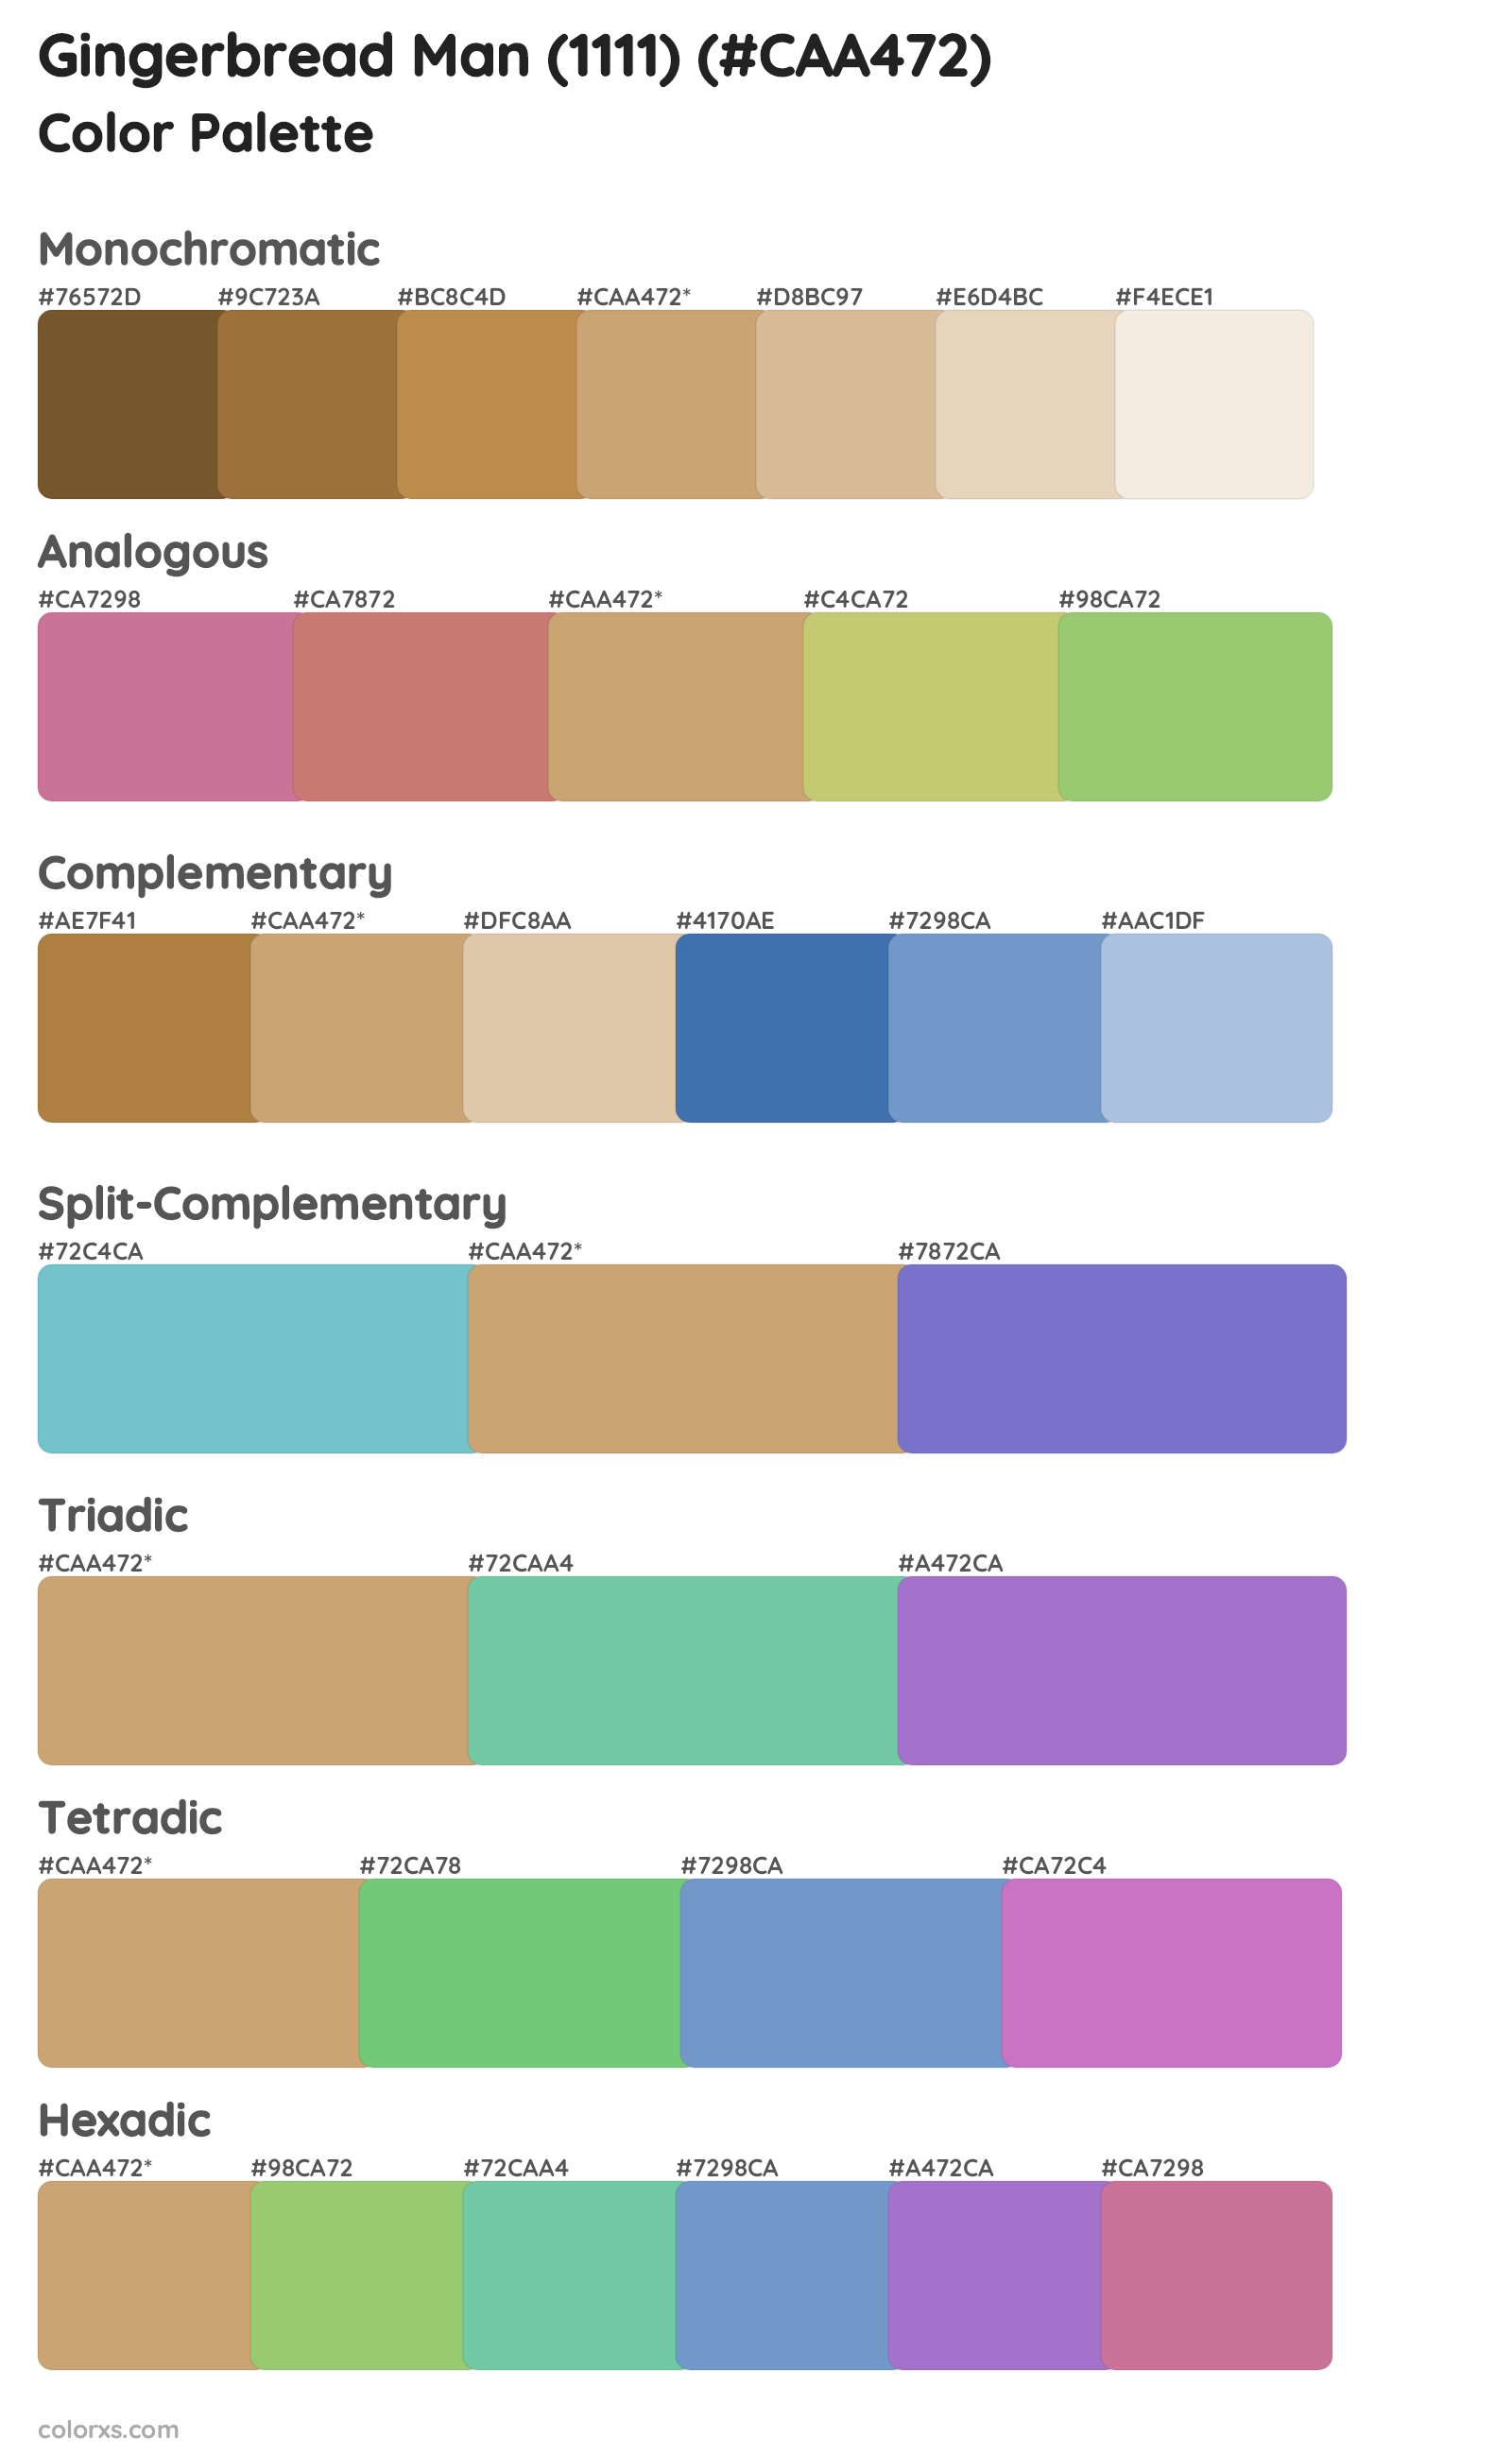 Gingerbread Man (1111) Color Scheme Palettes